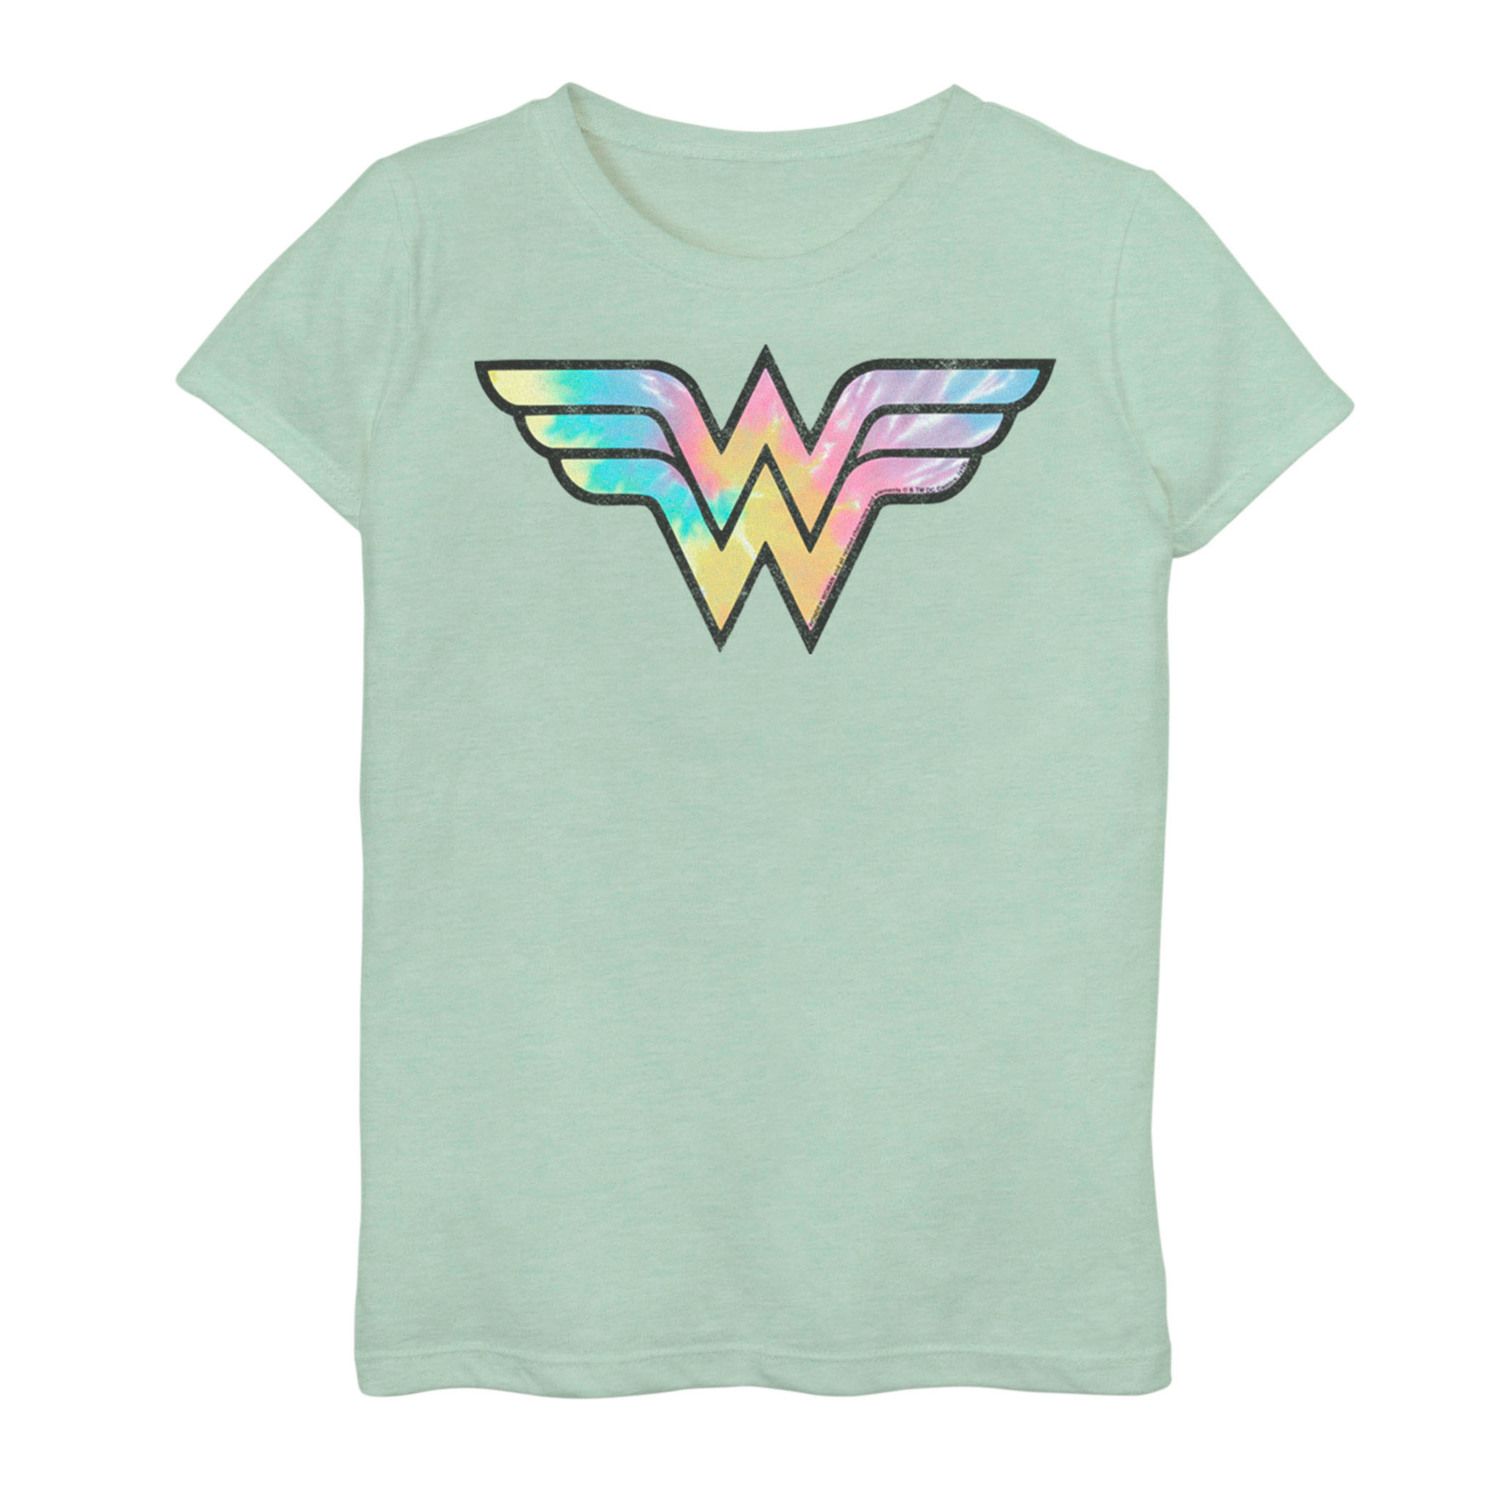 Футболка с графическим рисунком и логотипом DC Comics Wonder Woman для девочек 7–16 лет DC Comics футболка с геометрическим плакатом и графическим рисунком dc comics для девочек 7–16 лет с бэтменом dc comics